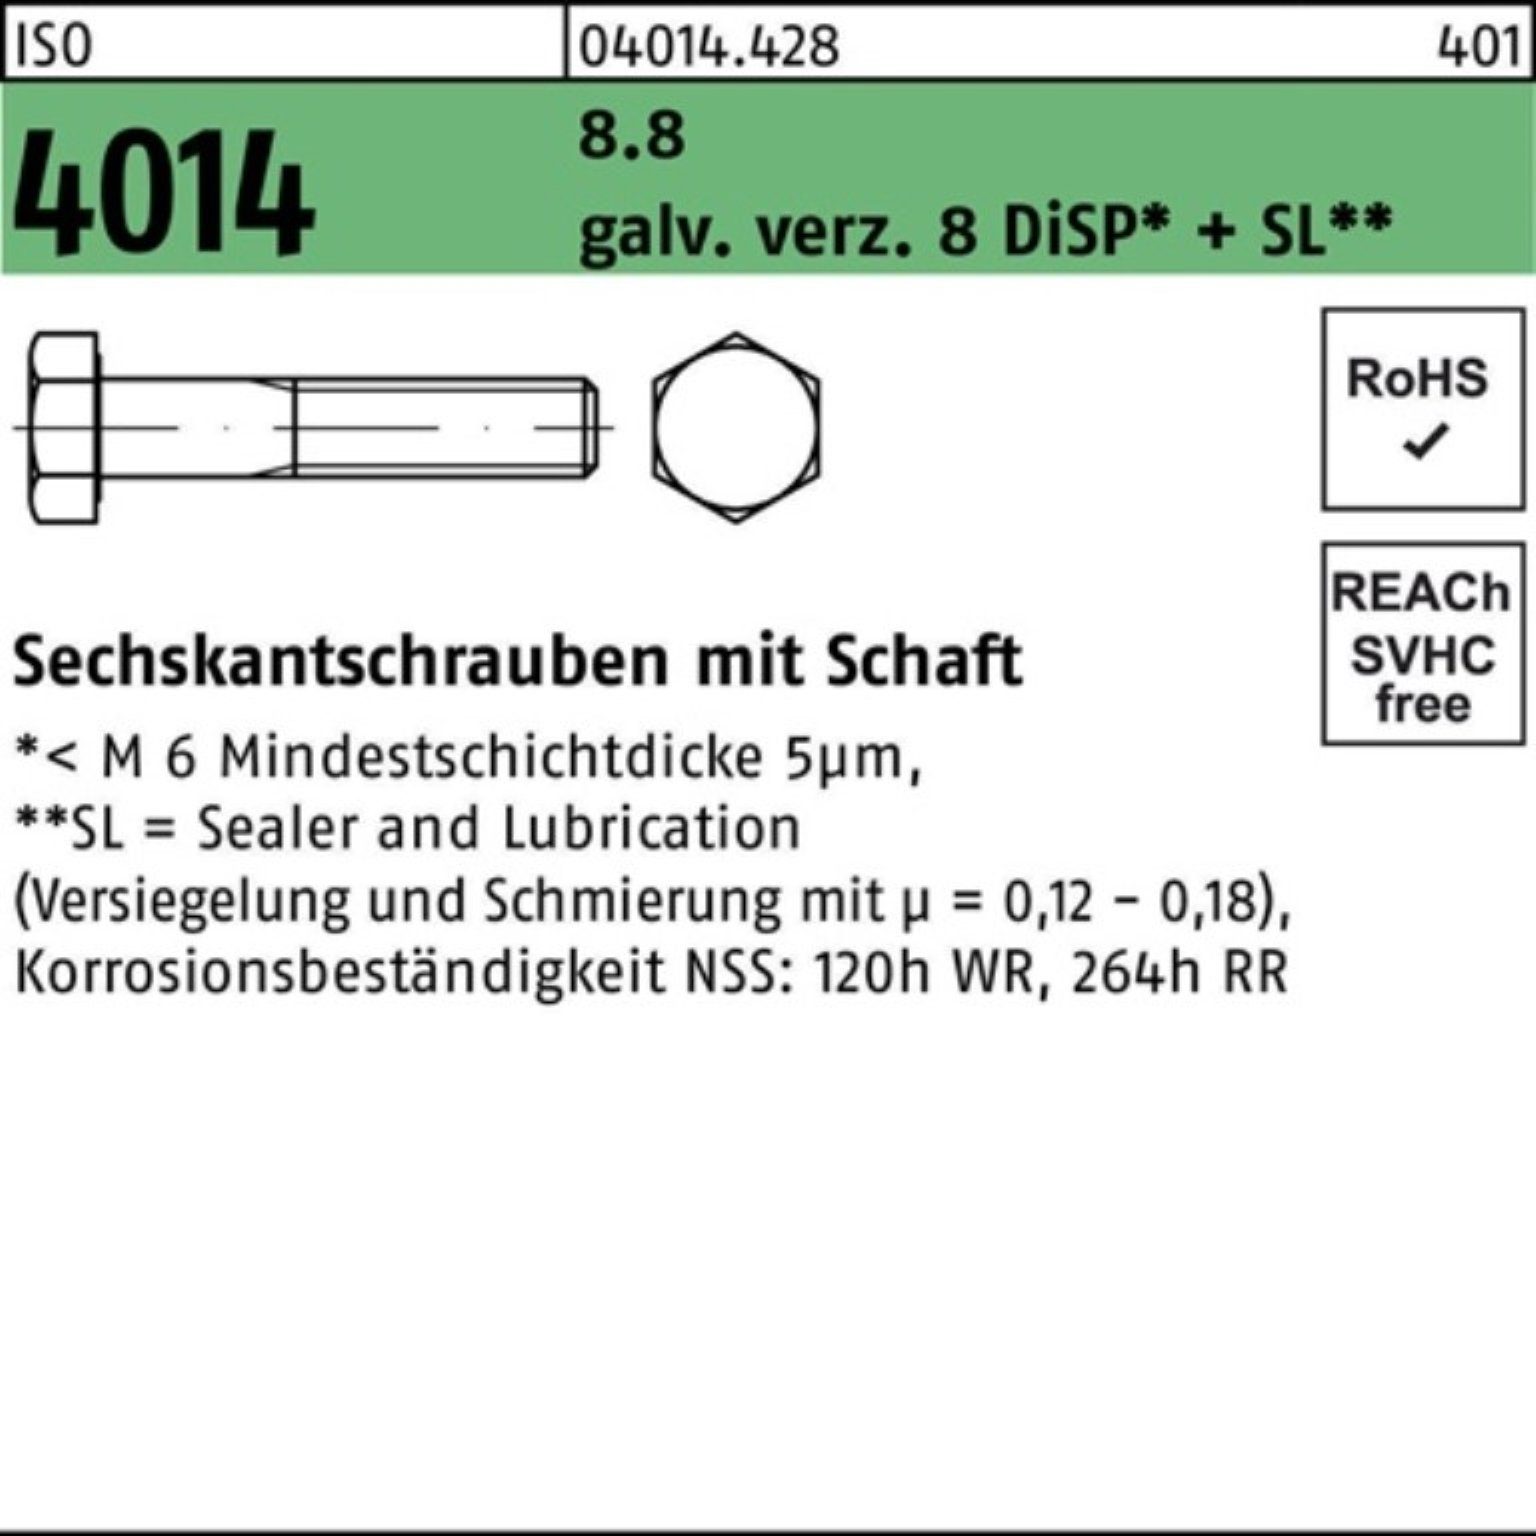 Bufab Sechskantschraube 100er Pack Sechskantschraube ISO 4014 Schaft M10x170 8.8 galv.verz. 8